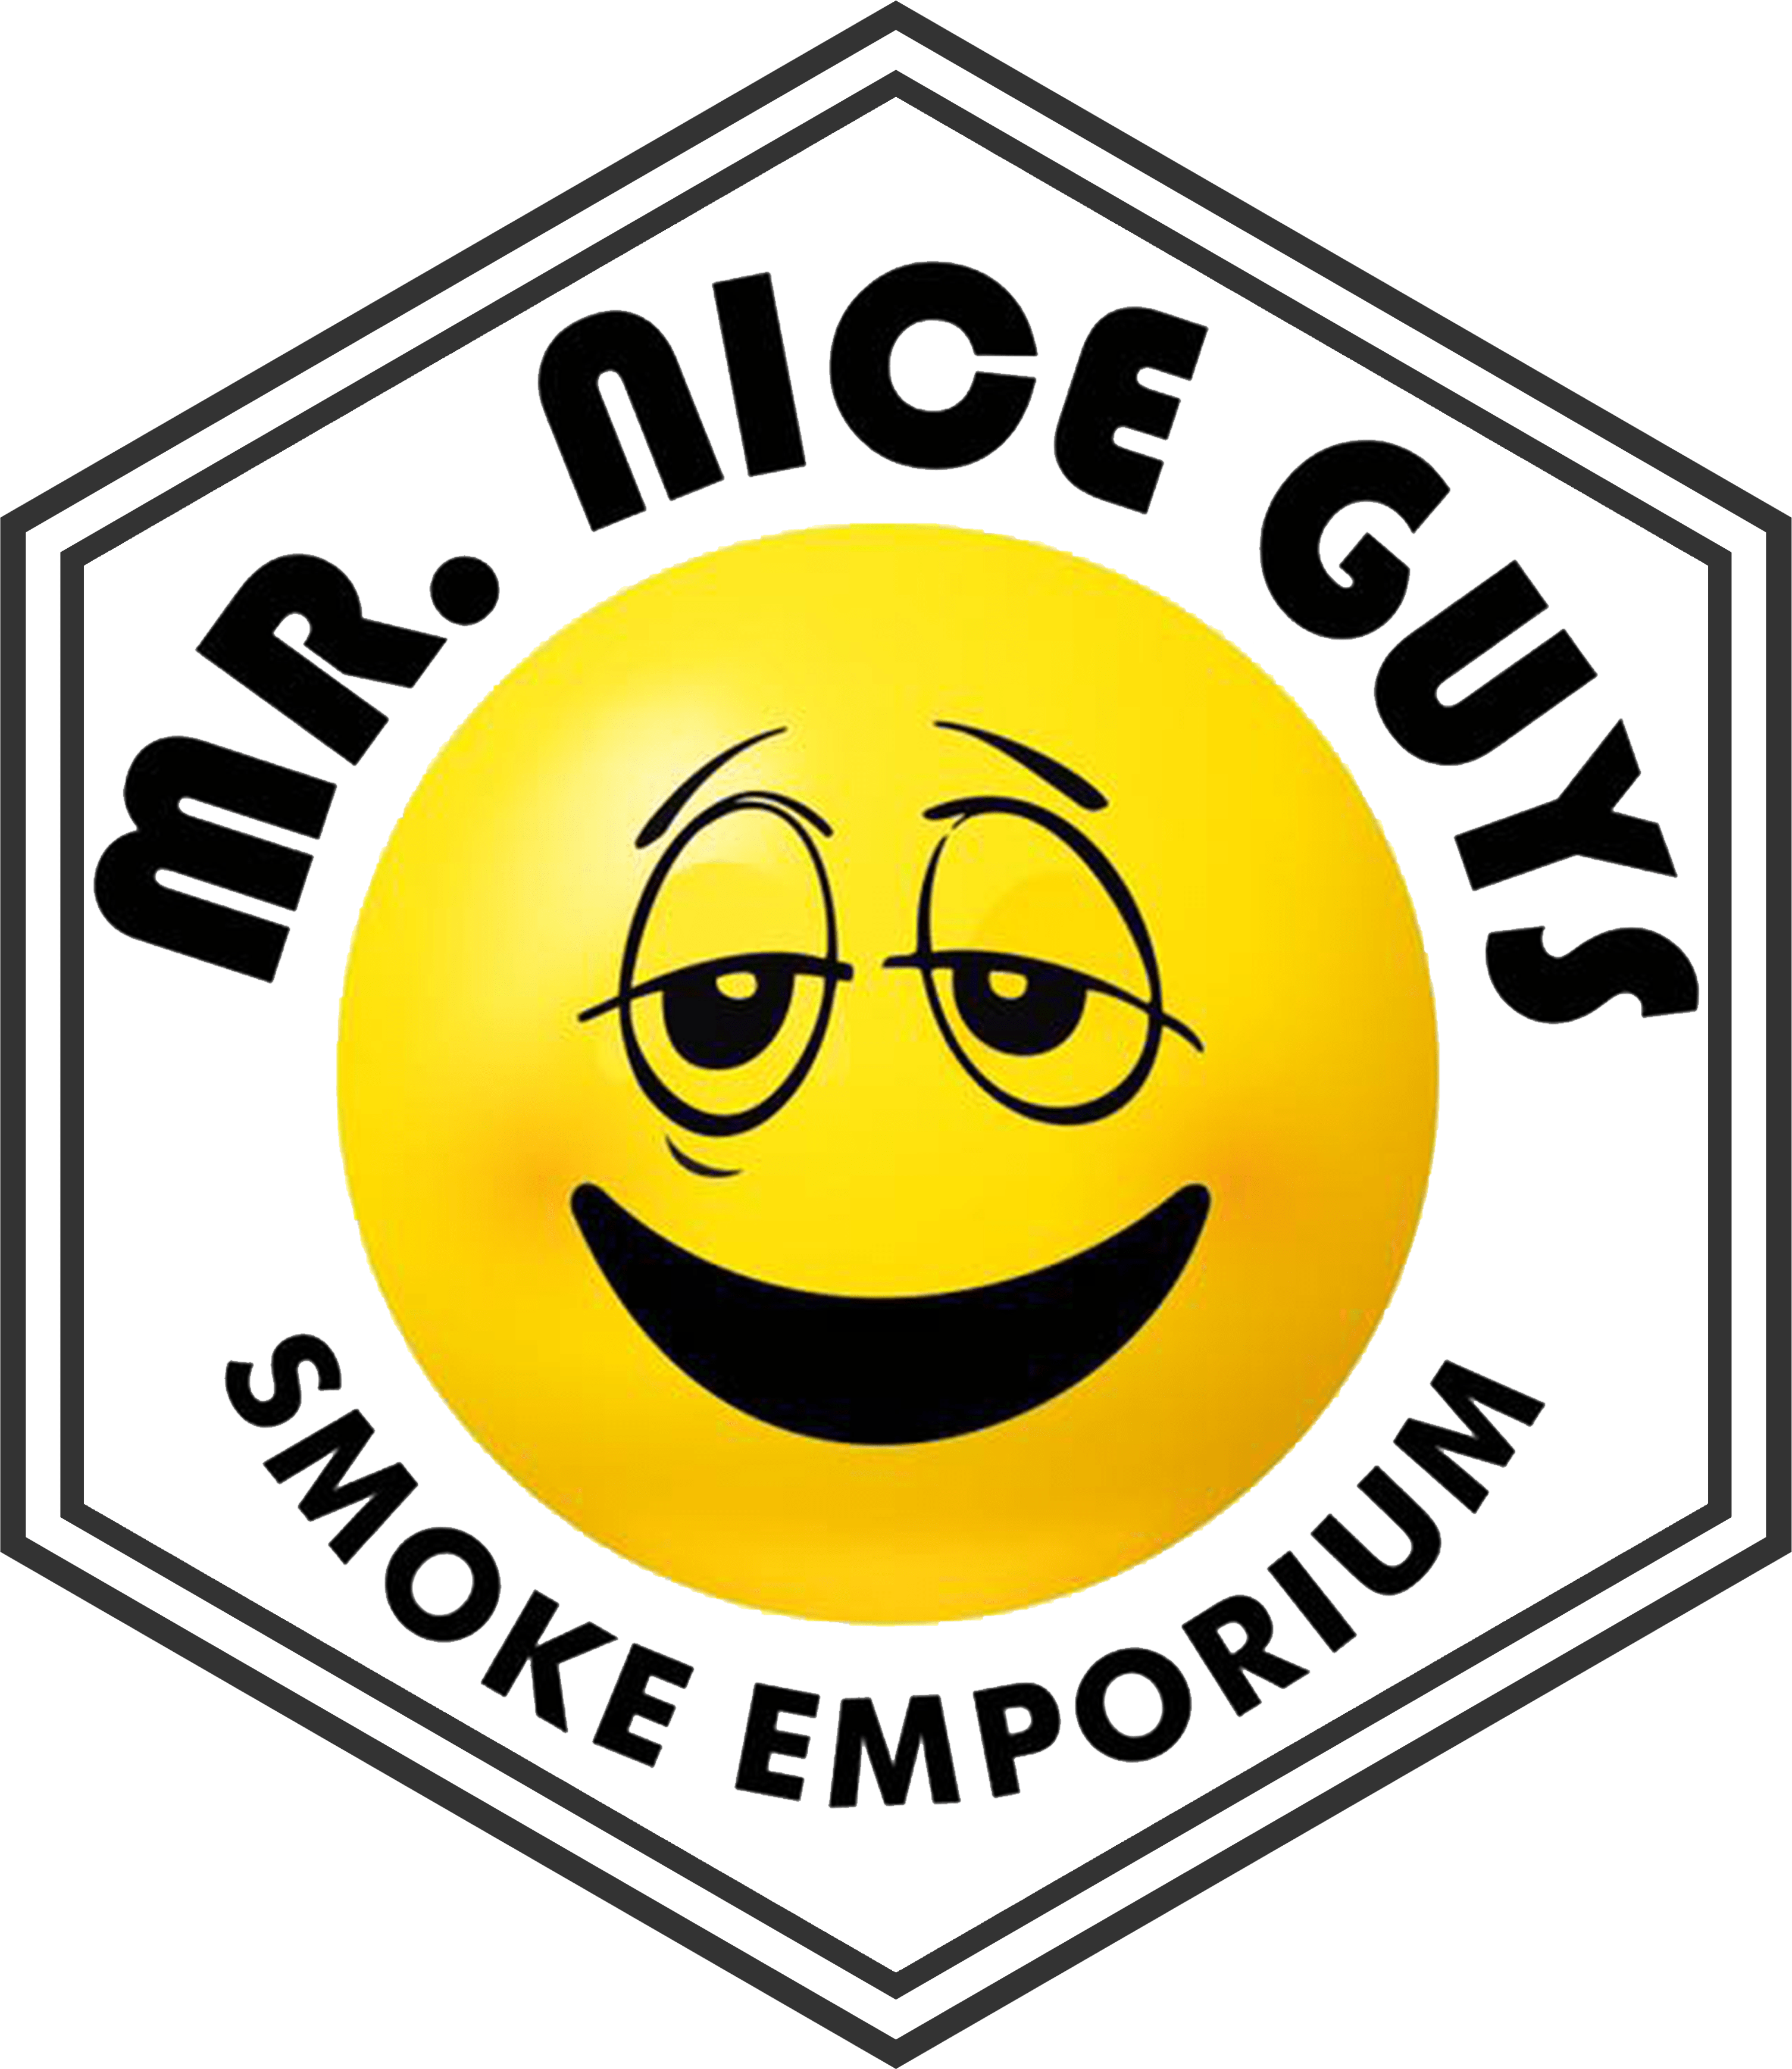 Mr Nice Guys Smoke Emporium